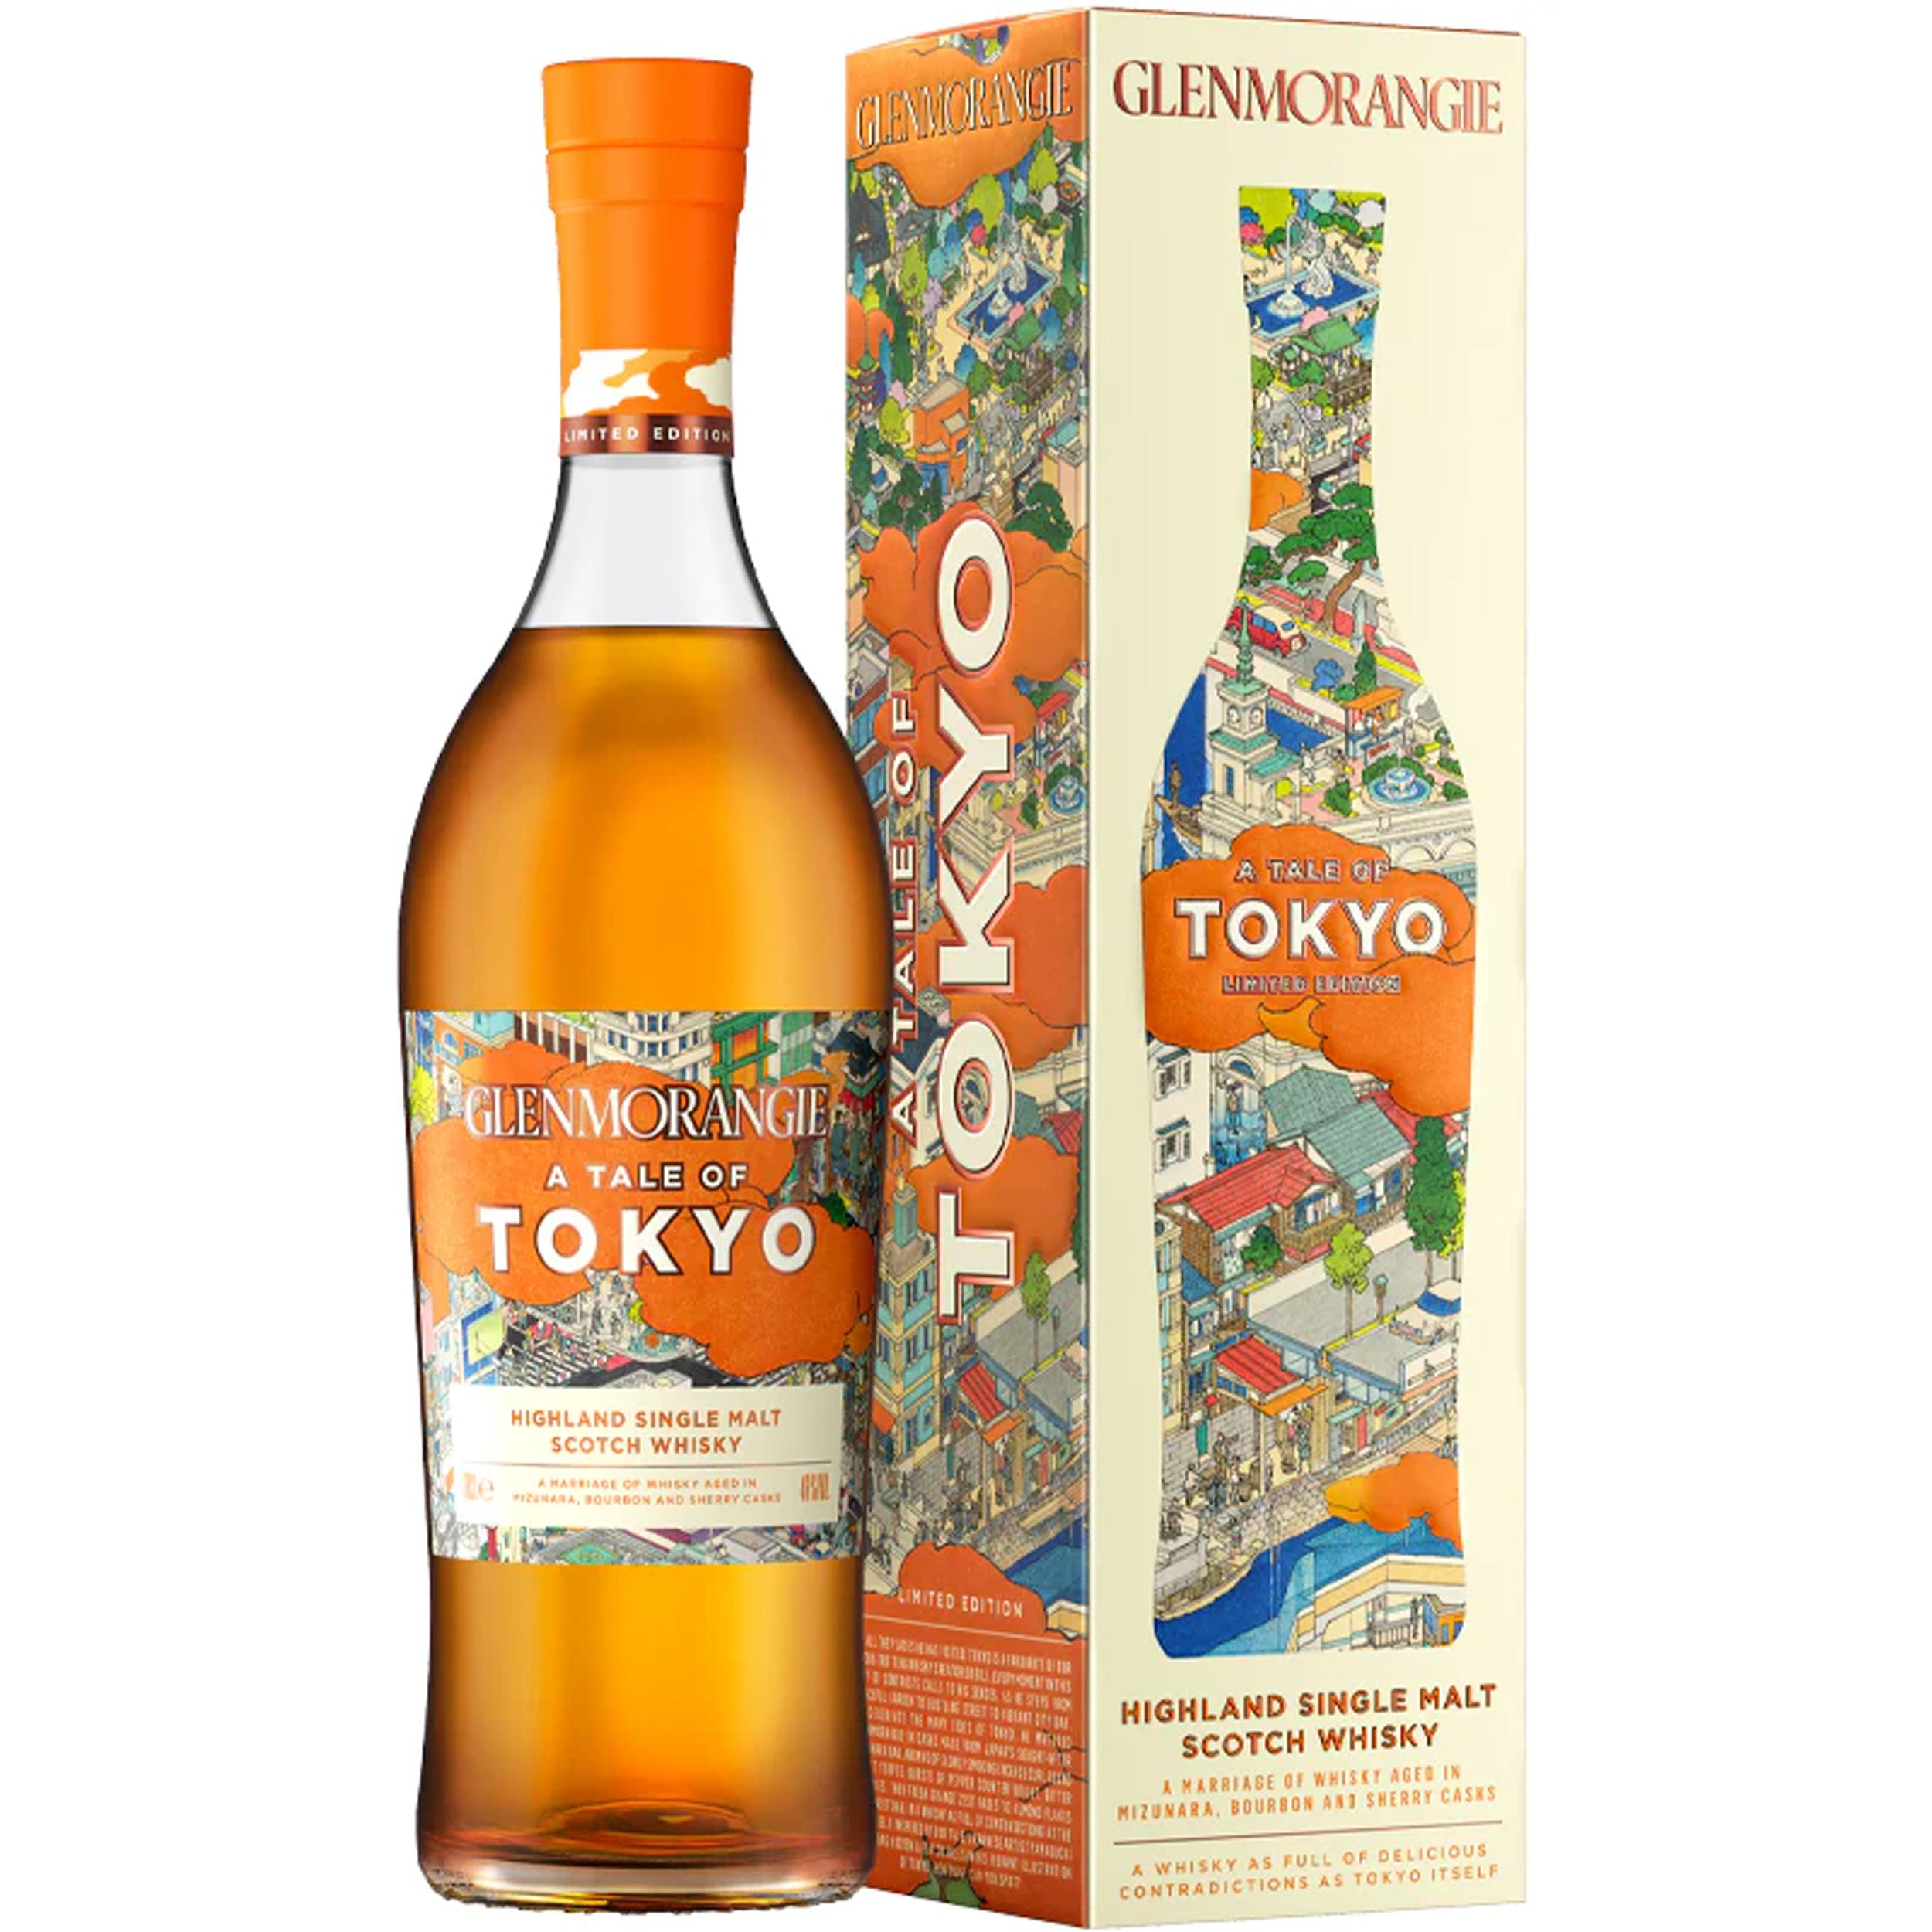 Glenmorangie 'A Tale of Tokyo' Scotch Whisky